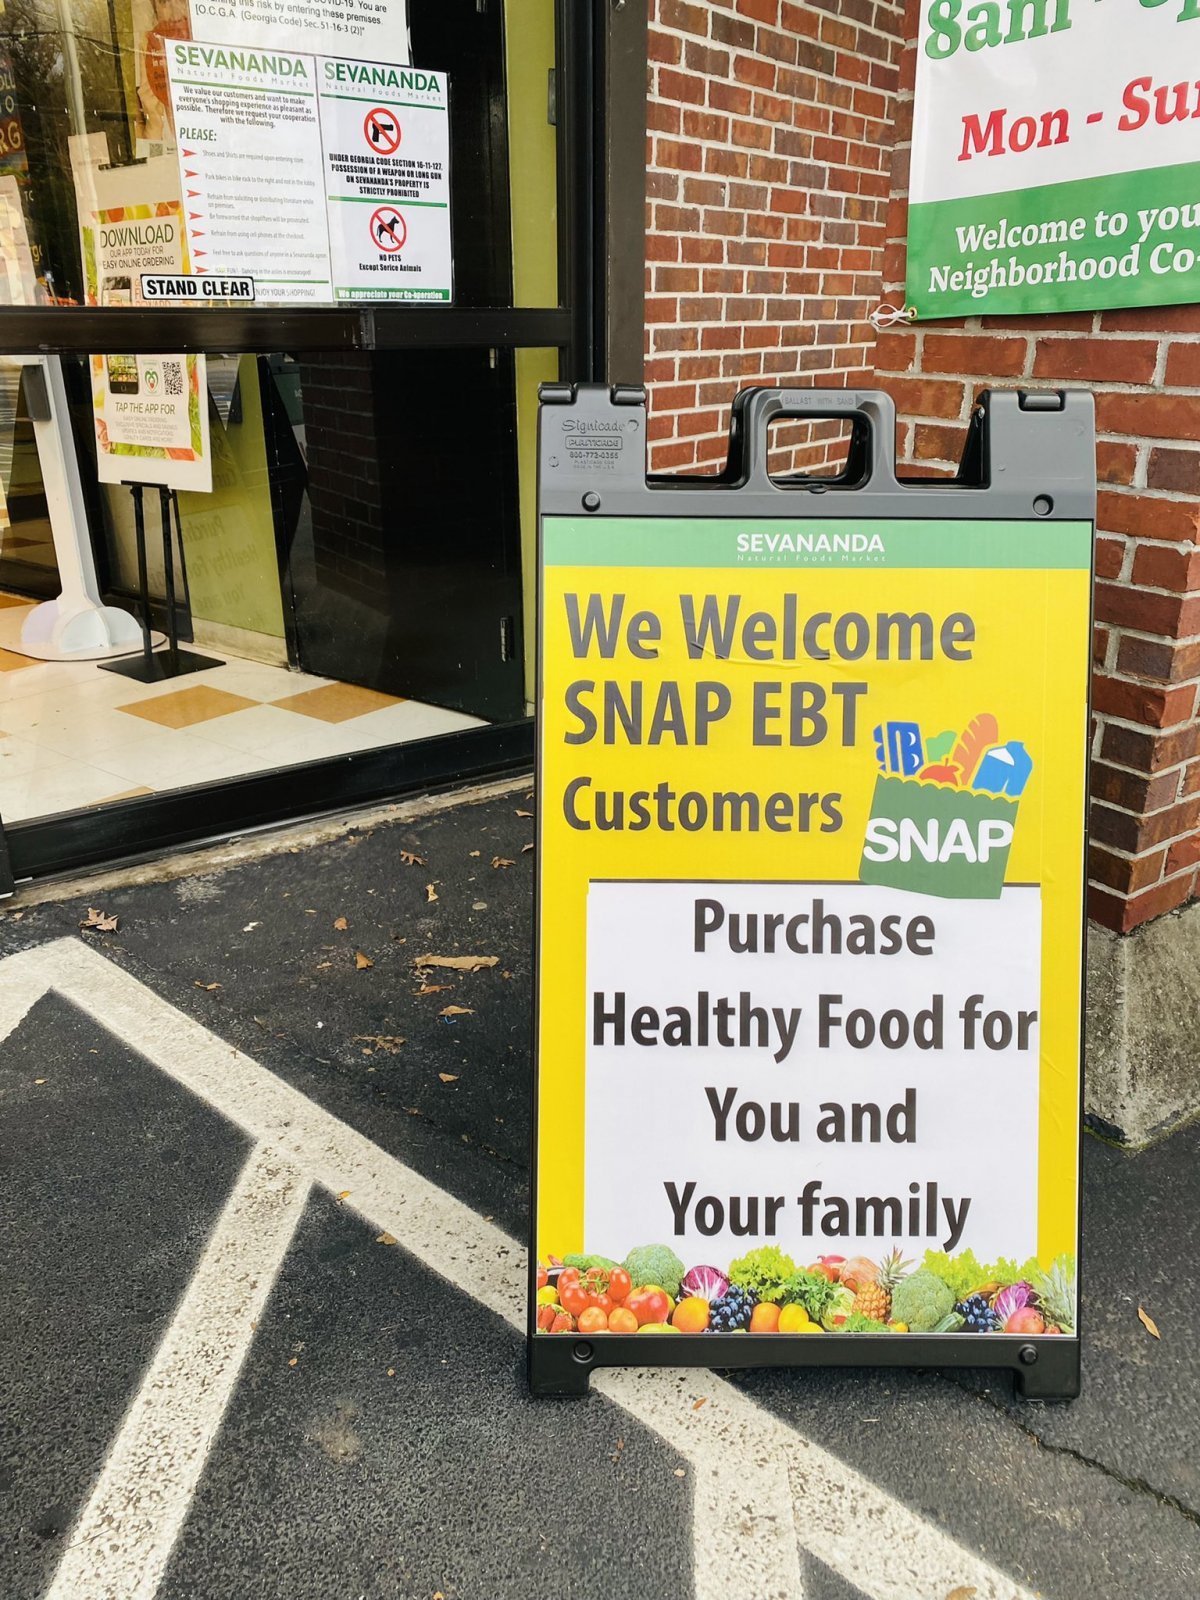 미국 조지아주 애틀랜타에 있는 채식주의 전문 식료품점 앞에 ‘보충적 영양지원 프로그램(SNAP)과 전자복지카드(EBT) 환영’이라고 쓴 입간판이 서 있다. 사진 출처 ‘세버낸더 네츄럴 푸드마켓’ 트위터